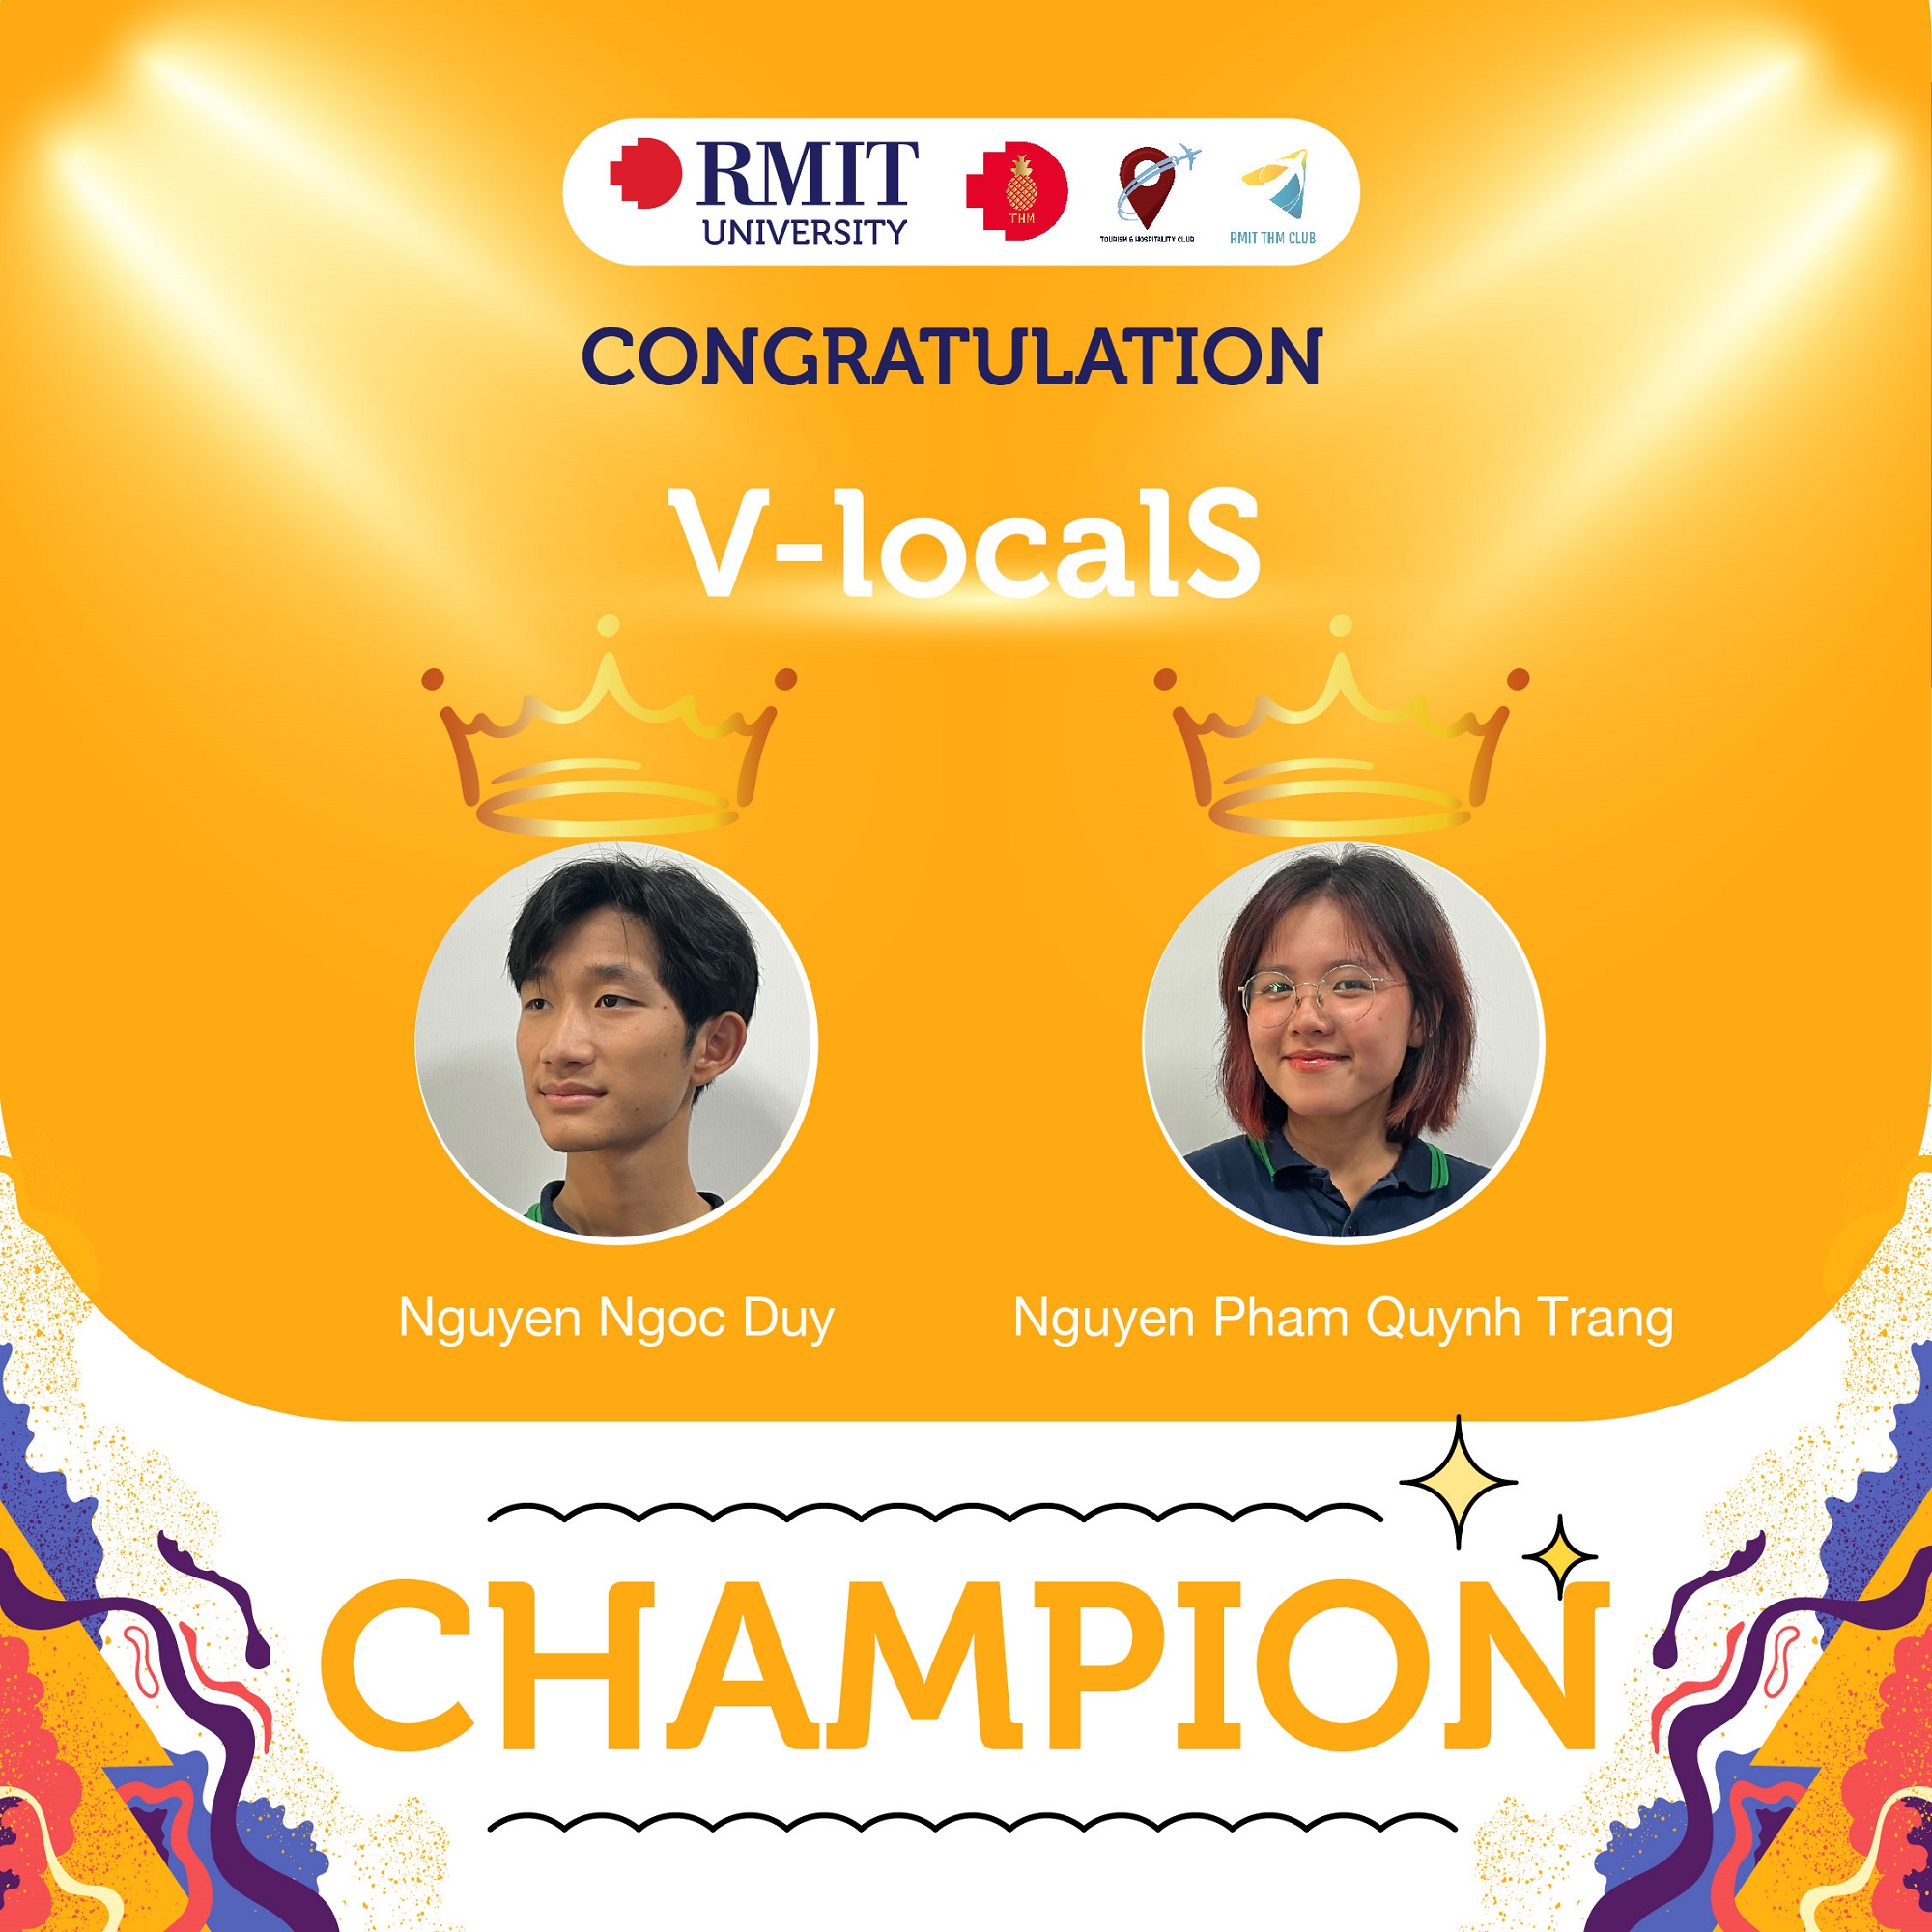  Nguyễn Ngọc Duy và Nguyễn Phạm Quỳnh Trang đ���n từ trường THPT FPT (Hà Nội) đã giành giải Nhất.